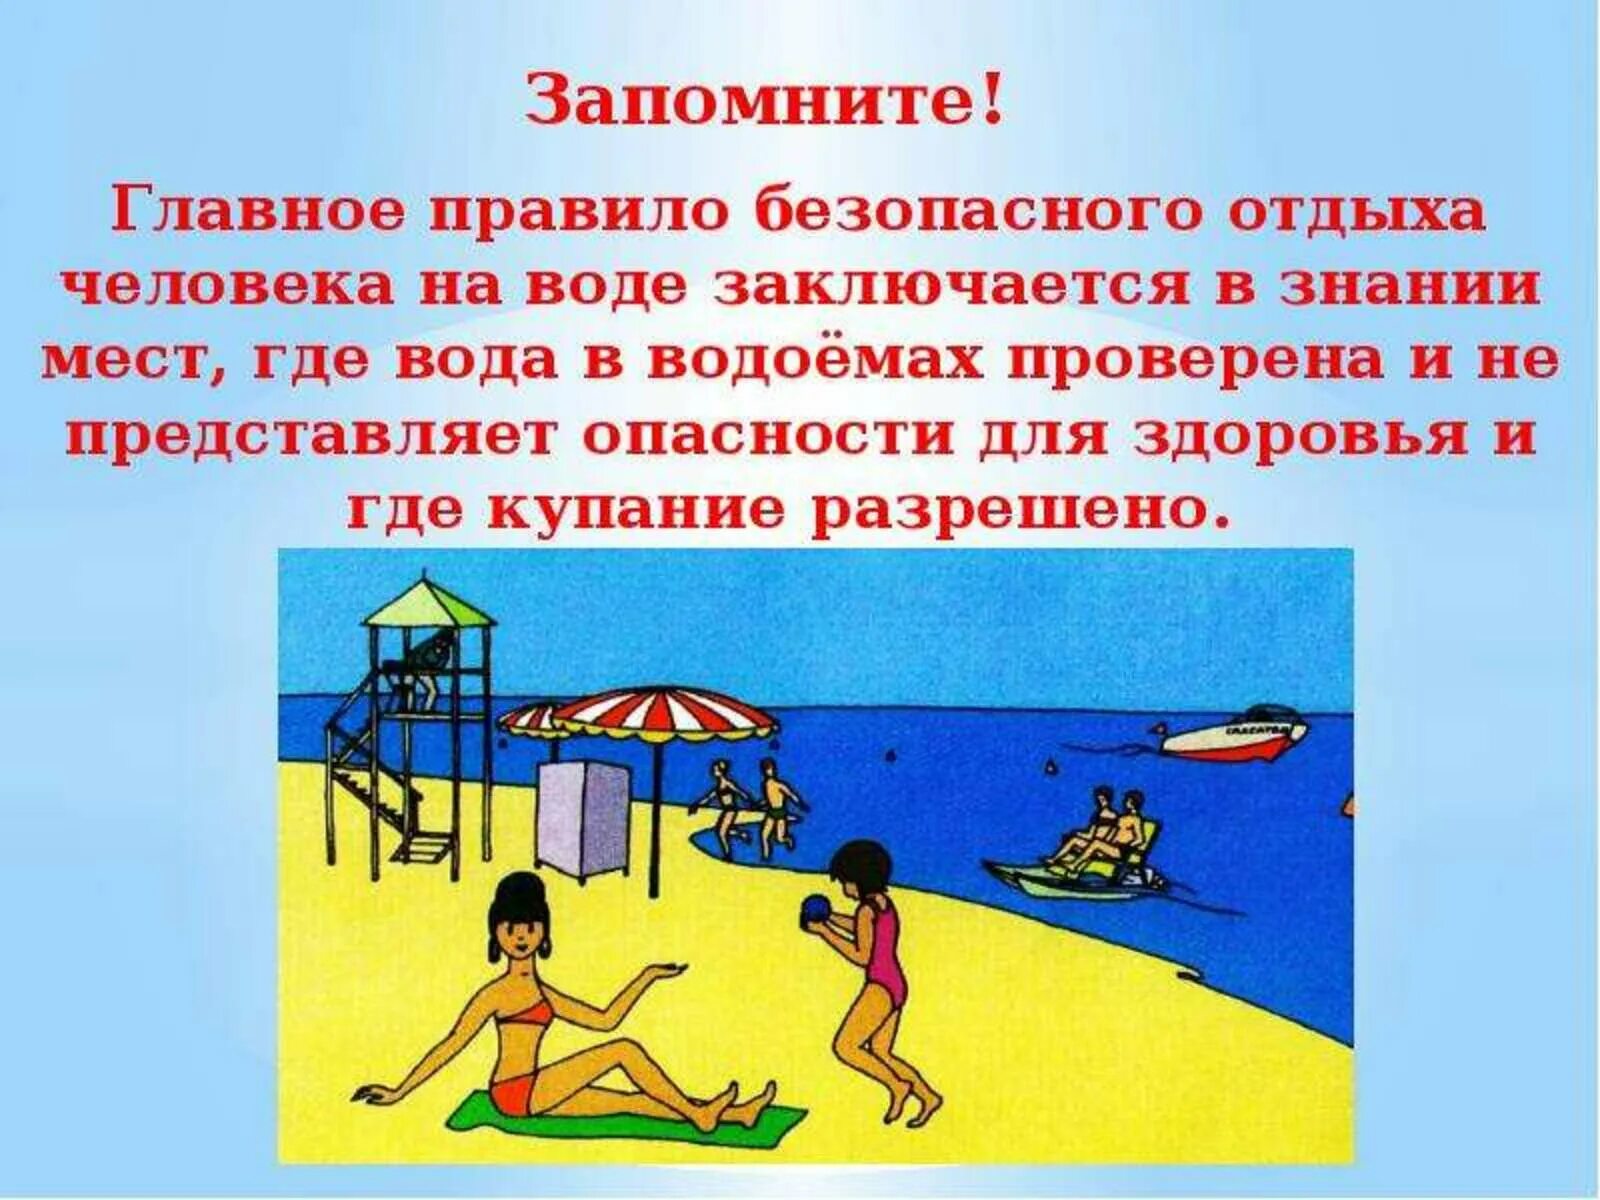 Отдых на воде правила безопасности. Опасности летнего отдыха. Правила безопасного отдыха на воде. Безопасное лето на воде. Безопасное купание